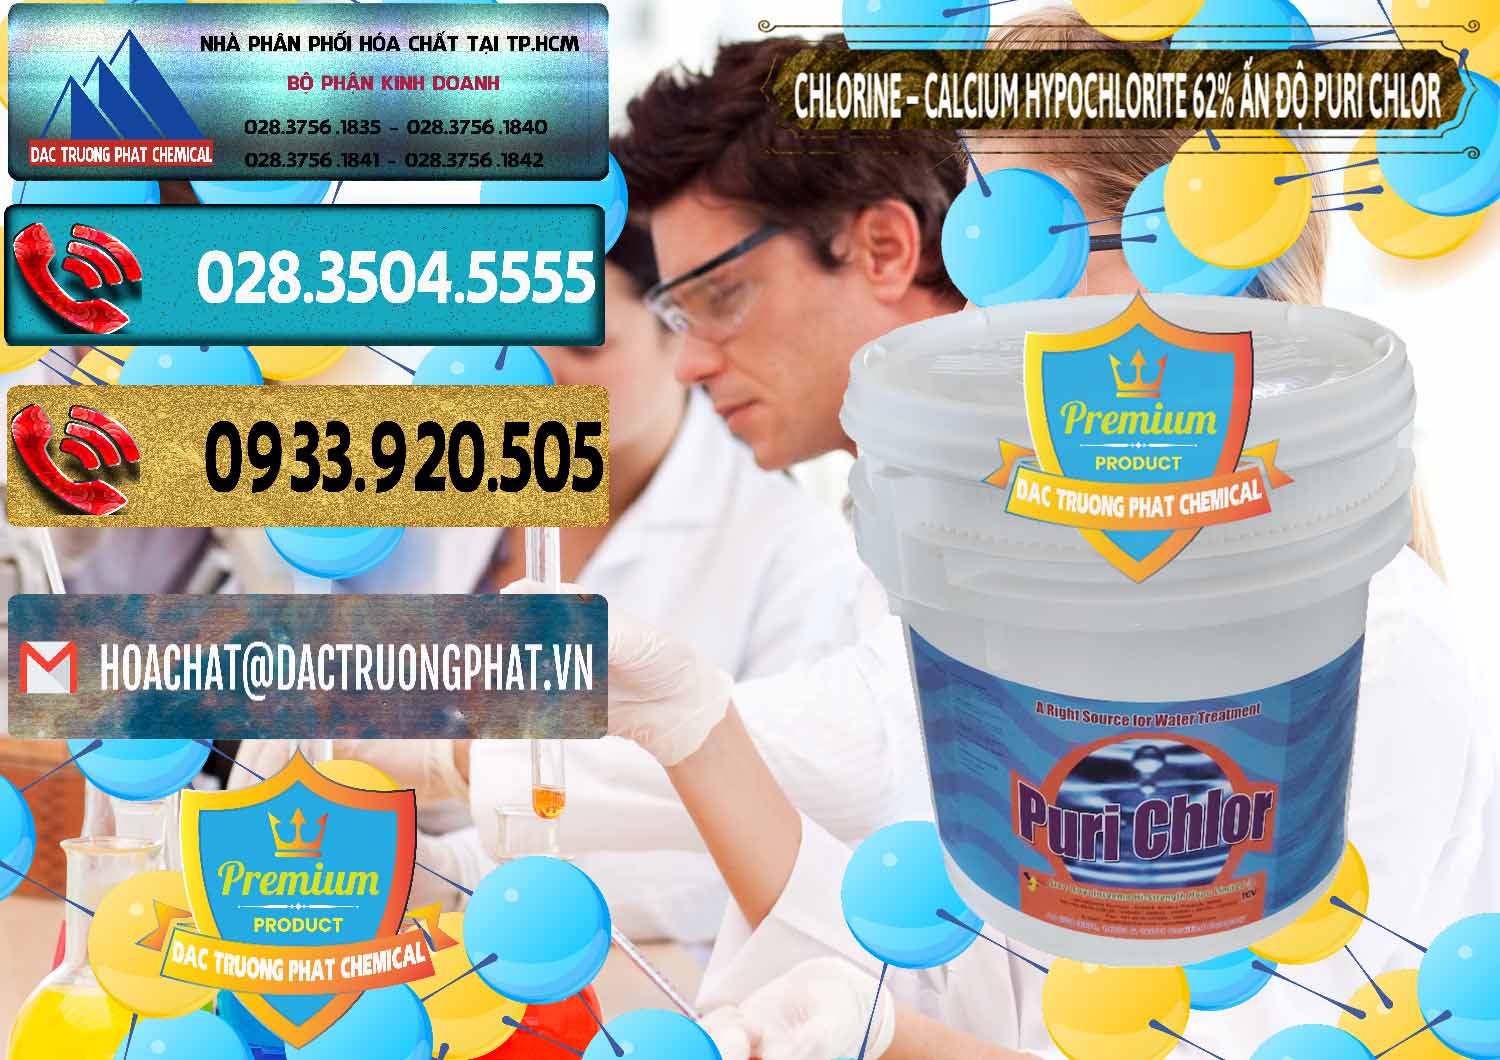 Cty chuyên phân phối & bán Chlorine – Clorin 62% Puri Chlo Ấn Độ India - 0052 - Đơn vị chuyên phân phối và cung ứng hóa chất tại TP.HCM - hoachatdetnhuom.com